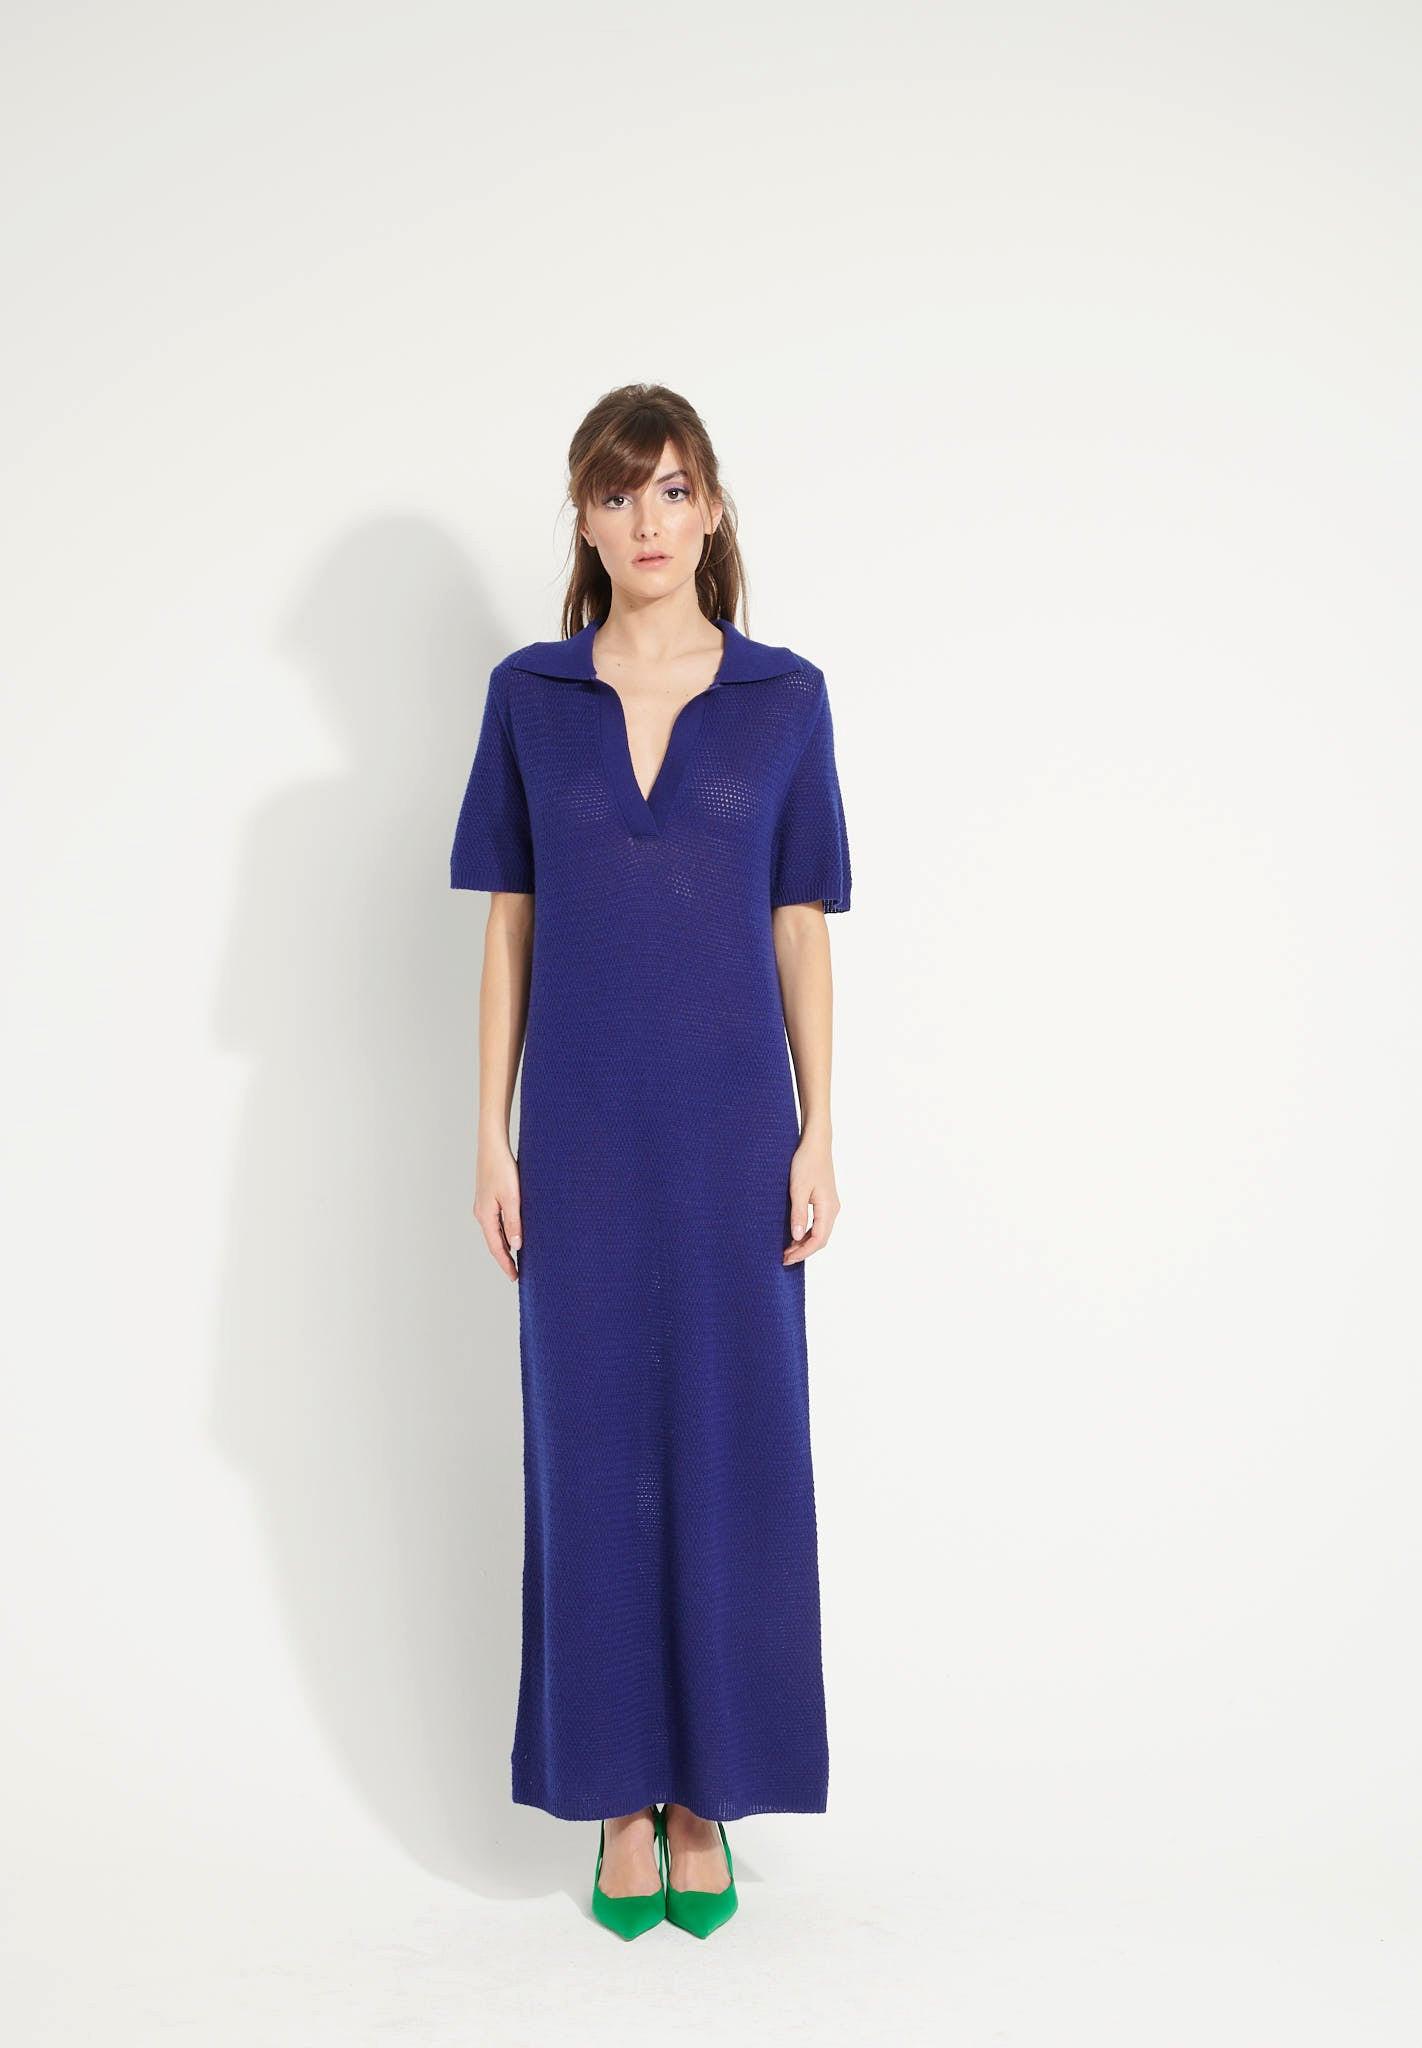 Ava 18 Langes Kleid Mit Polokragen - 100% Kaschmir, Entjungfert Damen Nachtblau S von Studio Cashmere8